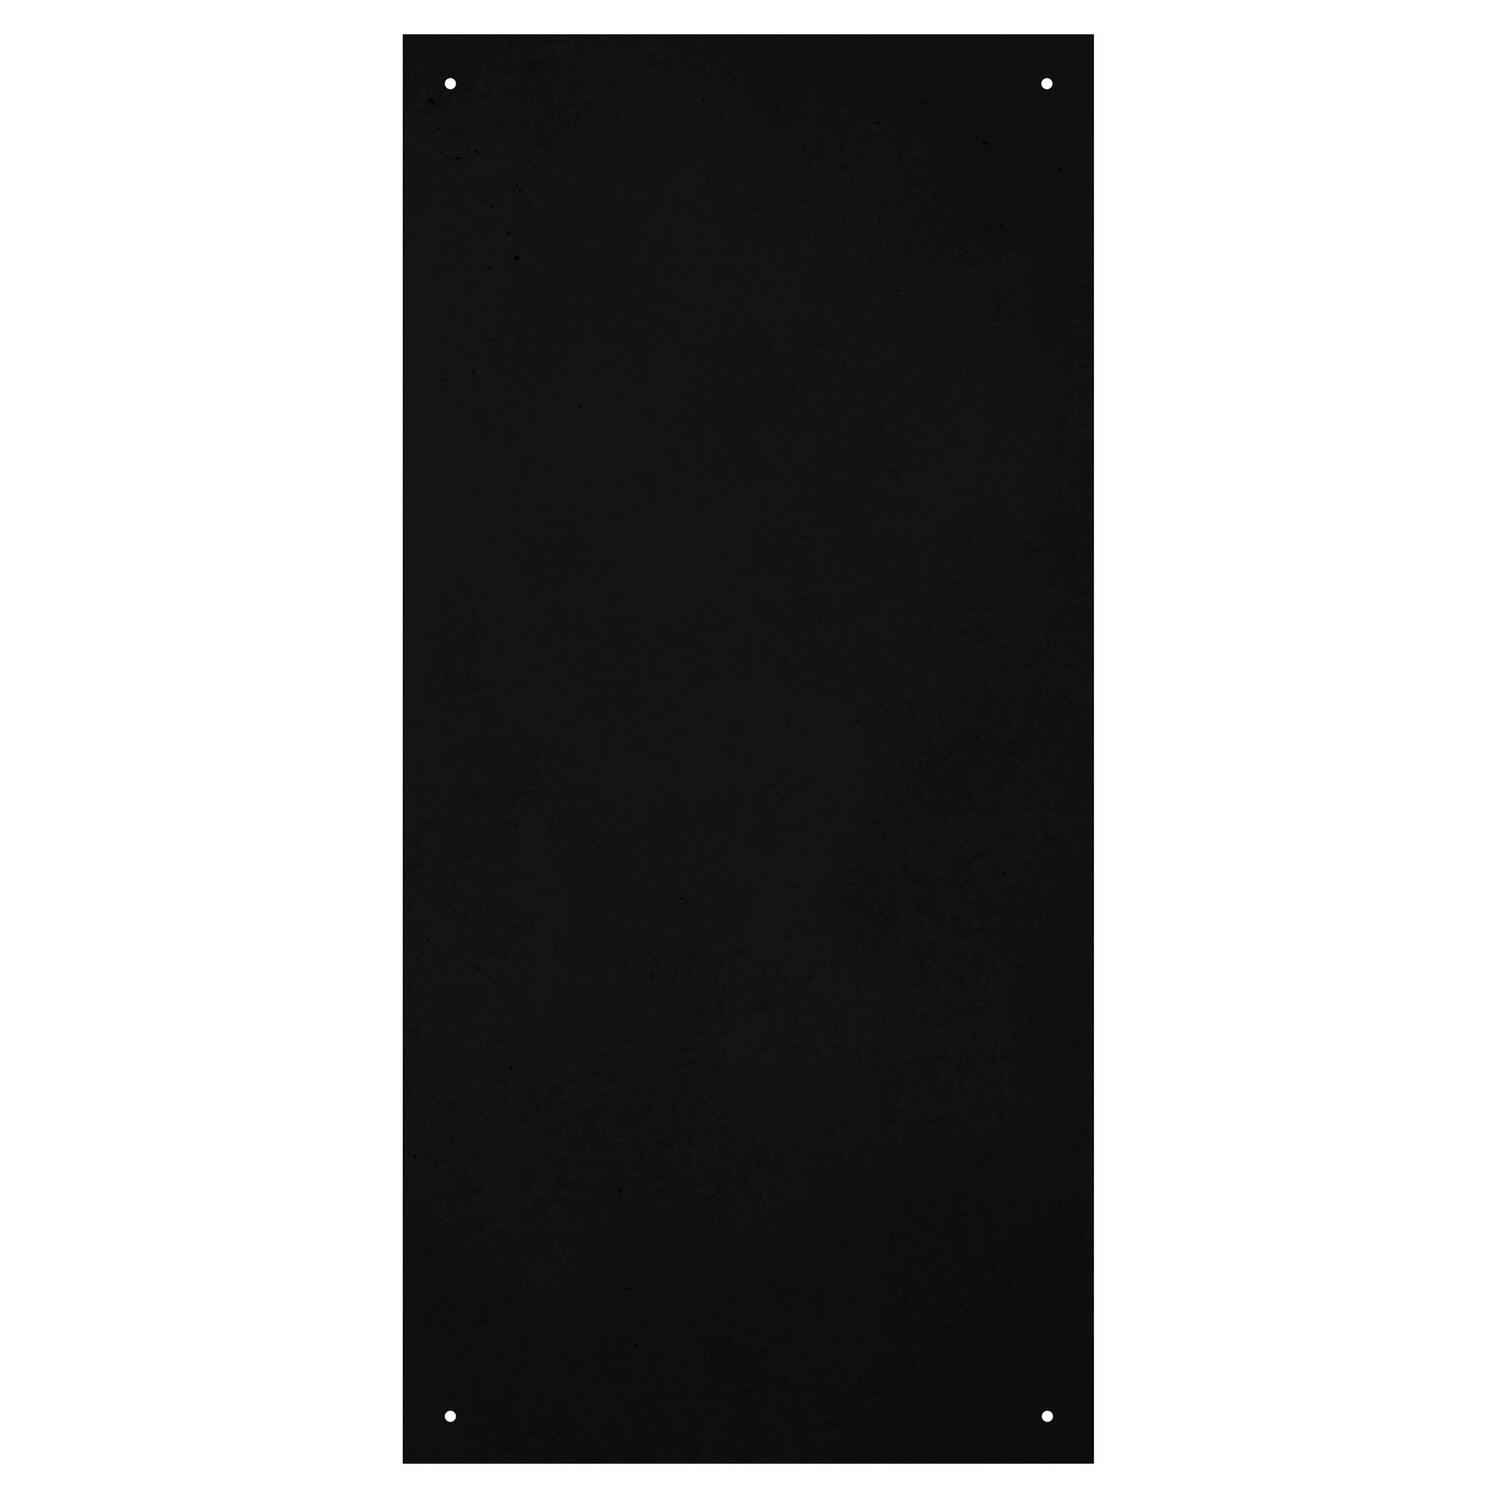 Wand-Kreidetafel ohne Rahmen, schwarz, 58x120cm, 1 Stk.